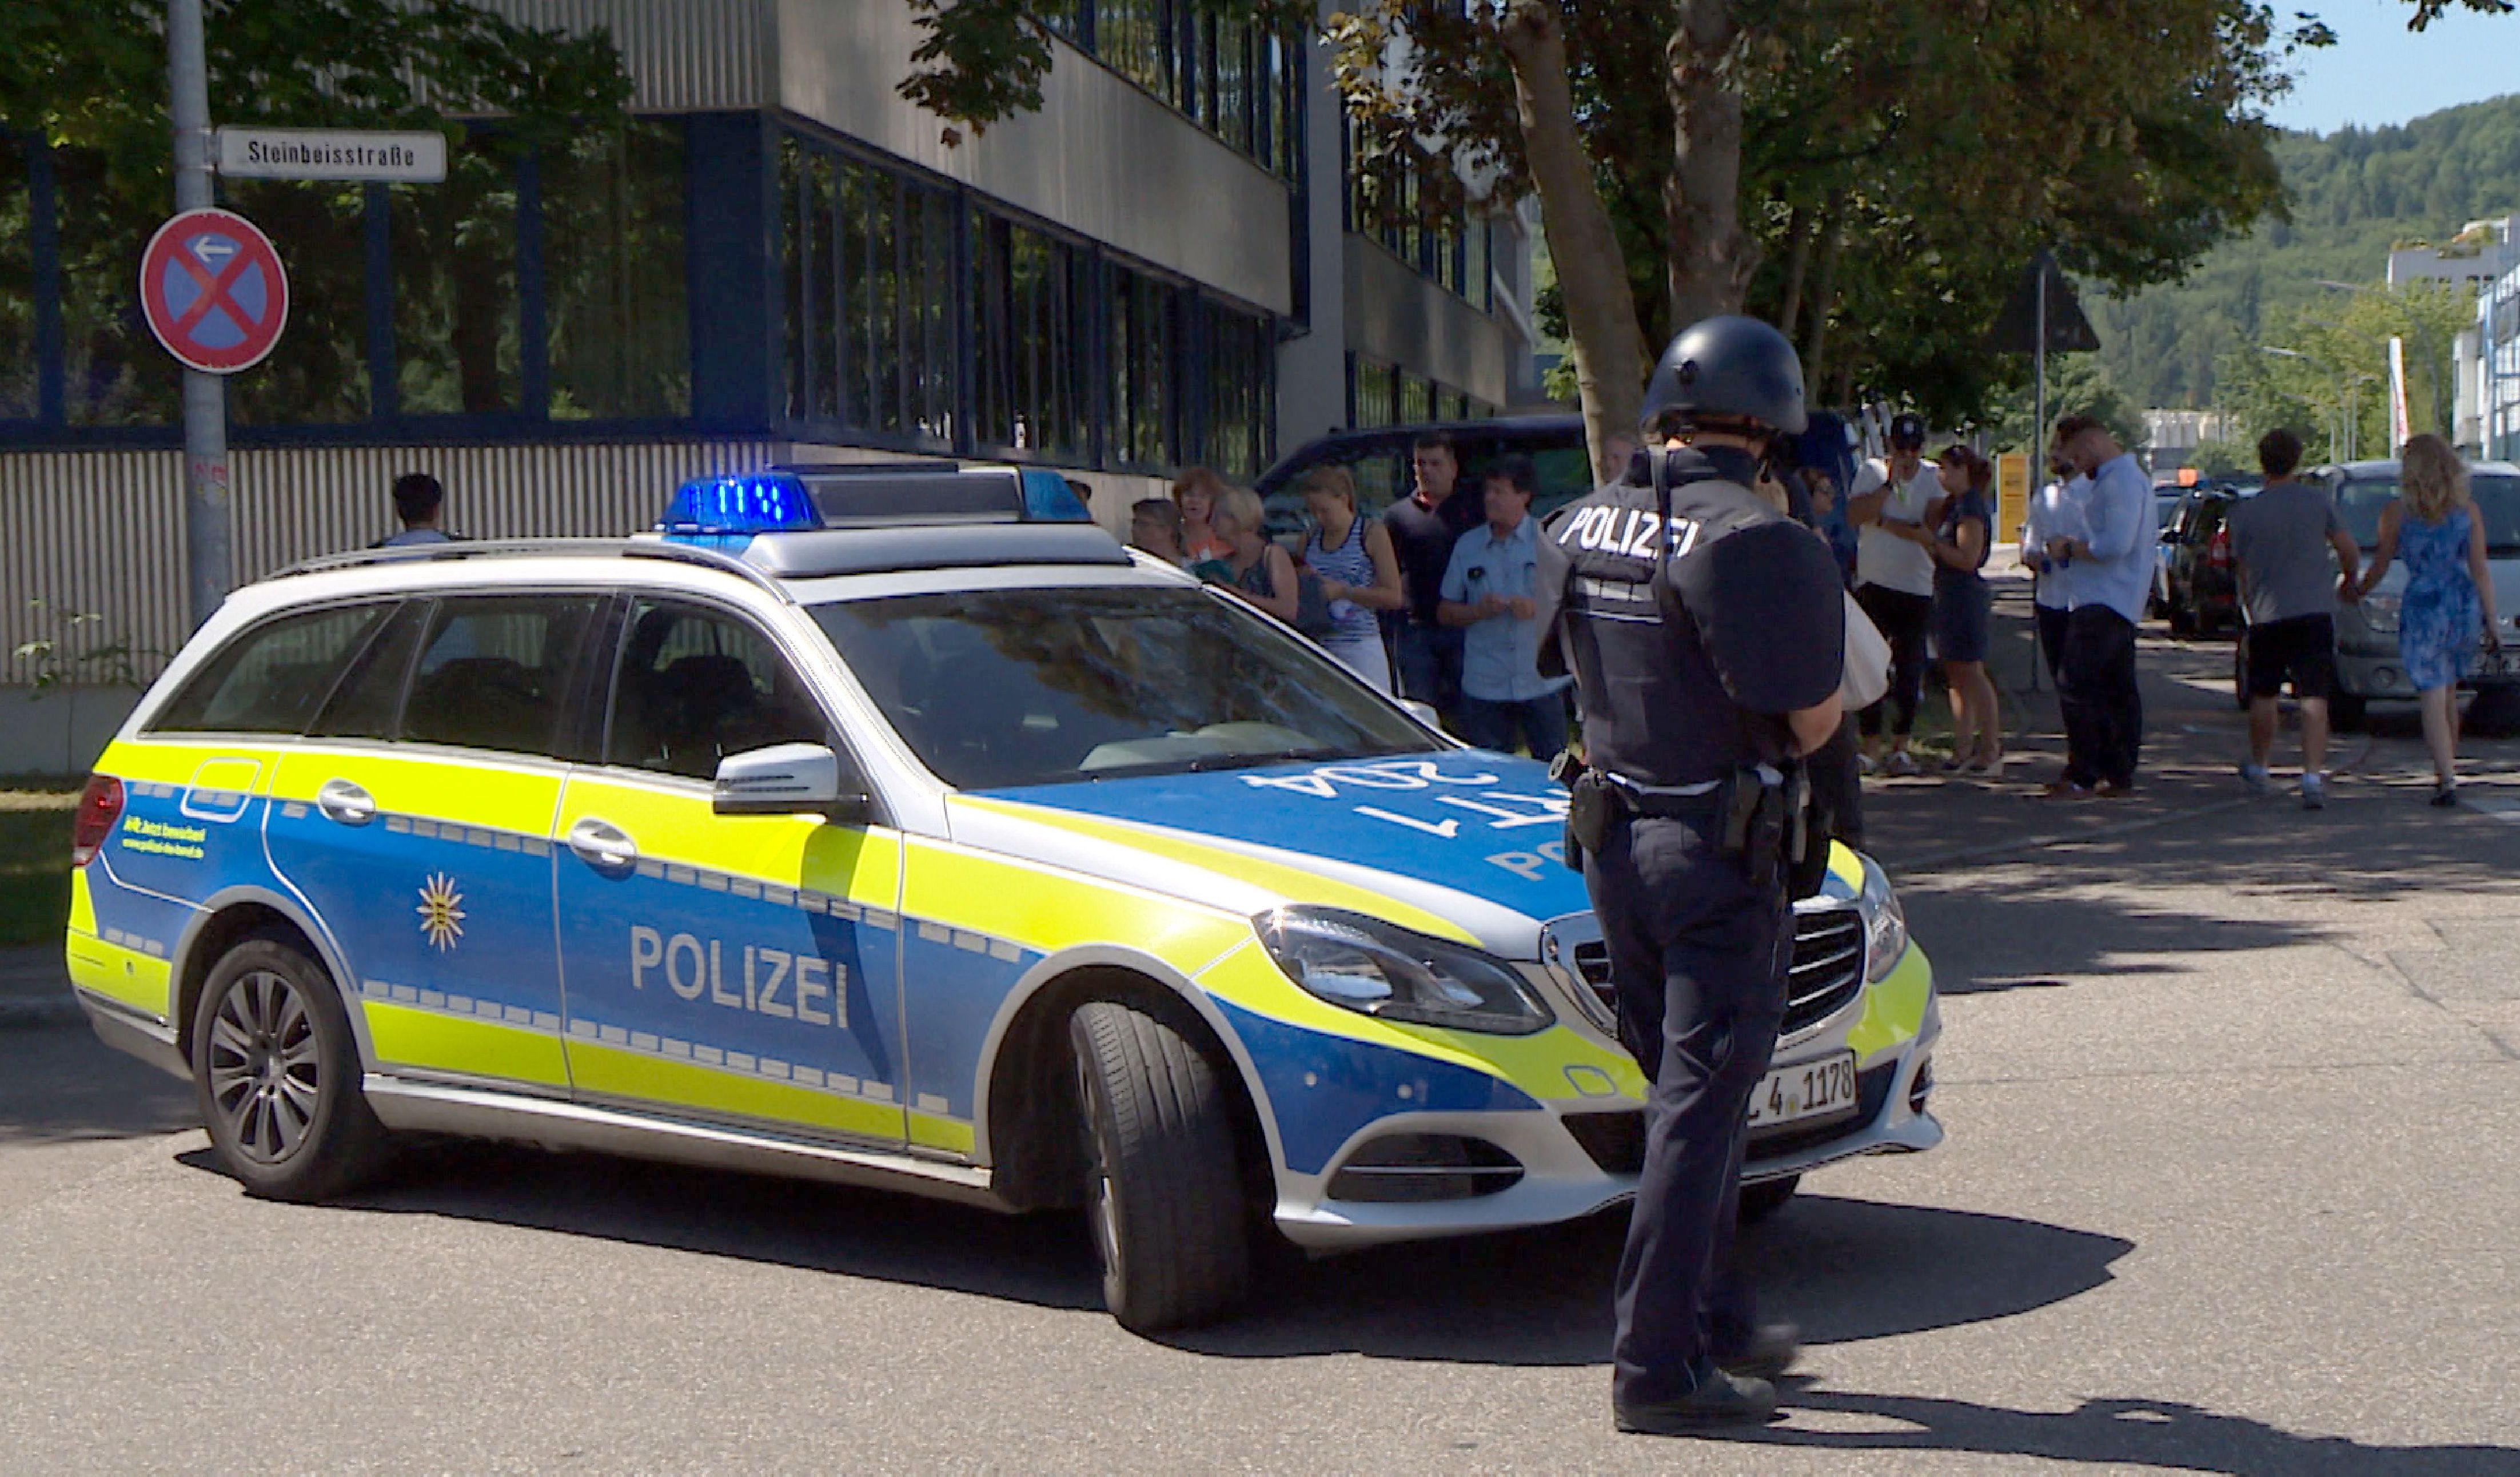 جريمة قتل بشعة بطلاها تلميذتان في ألمانيا